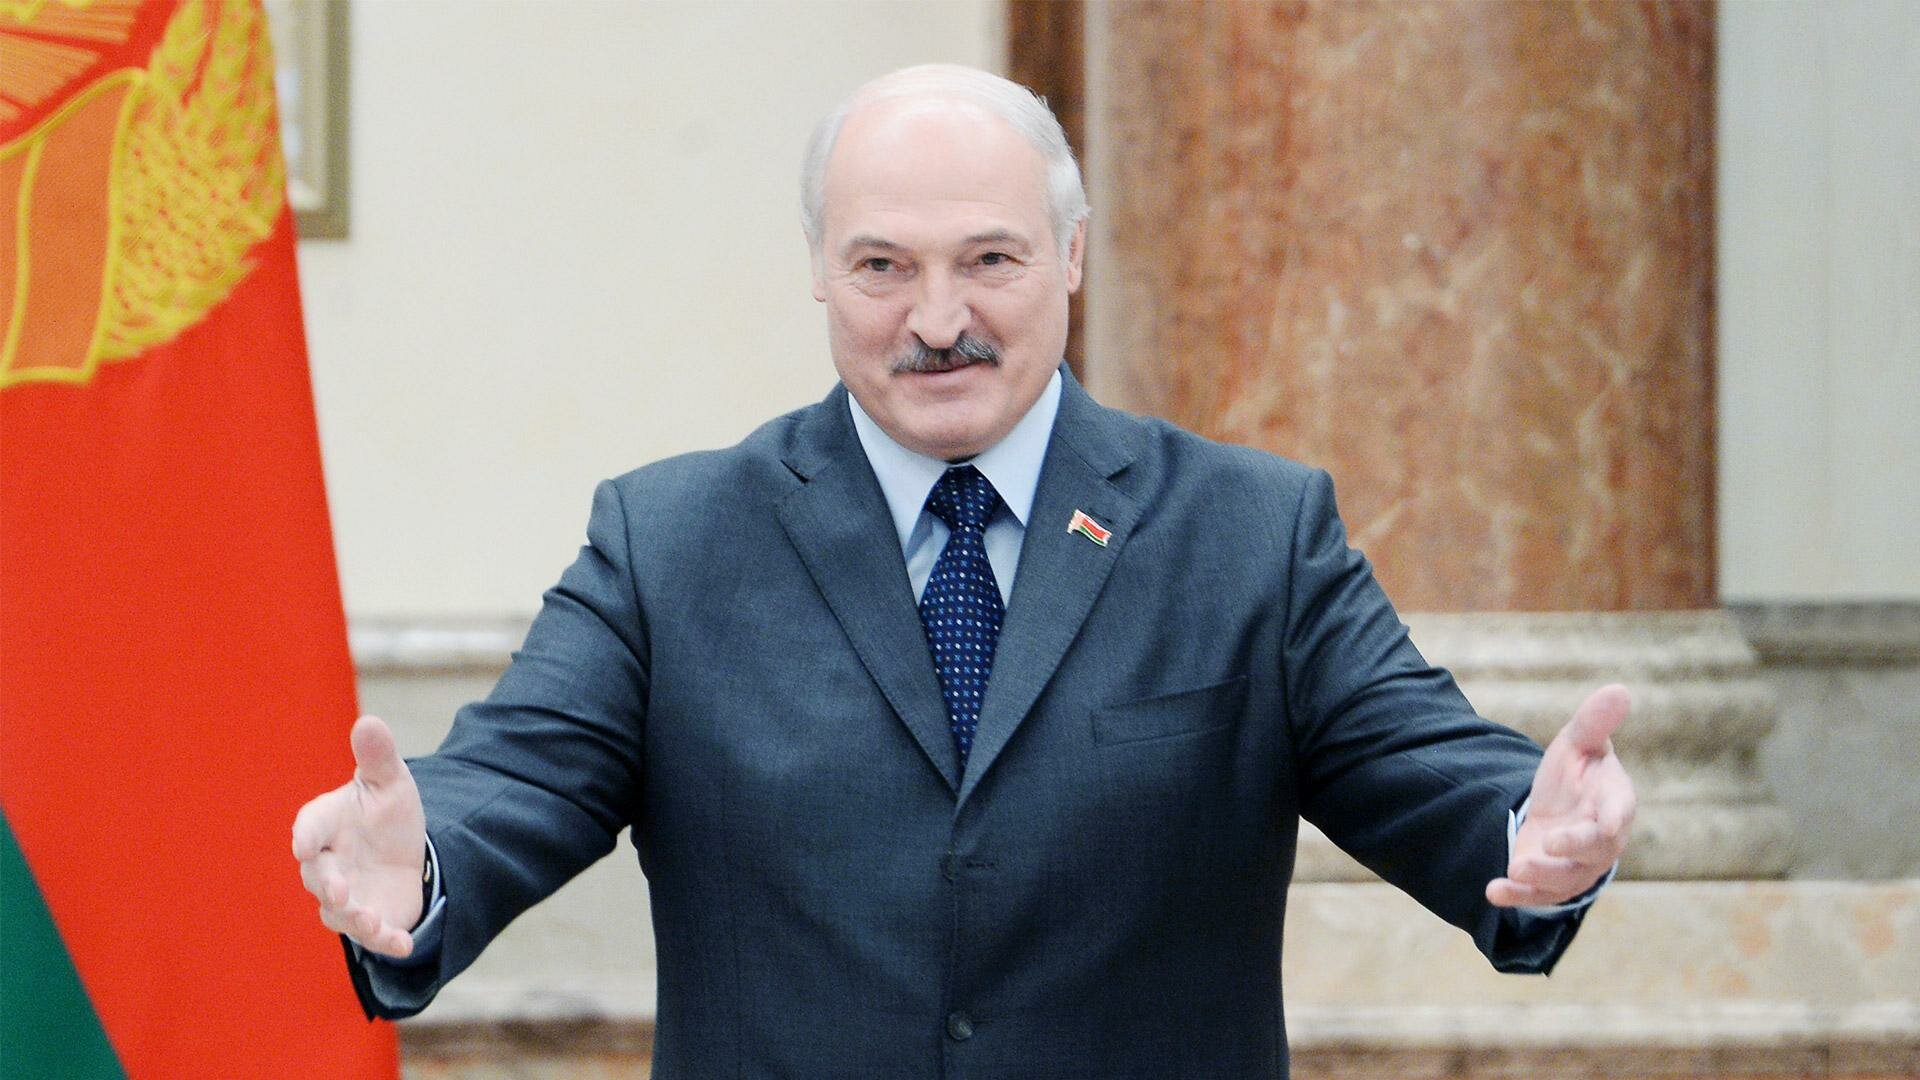 ​Лукашенко назвал митингующих мордоворотами, протестующими за деньги: кадры